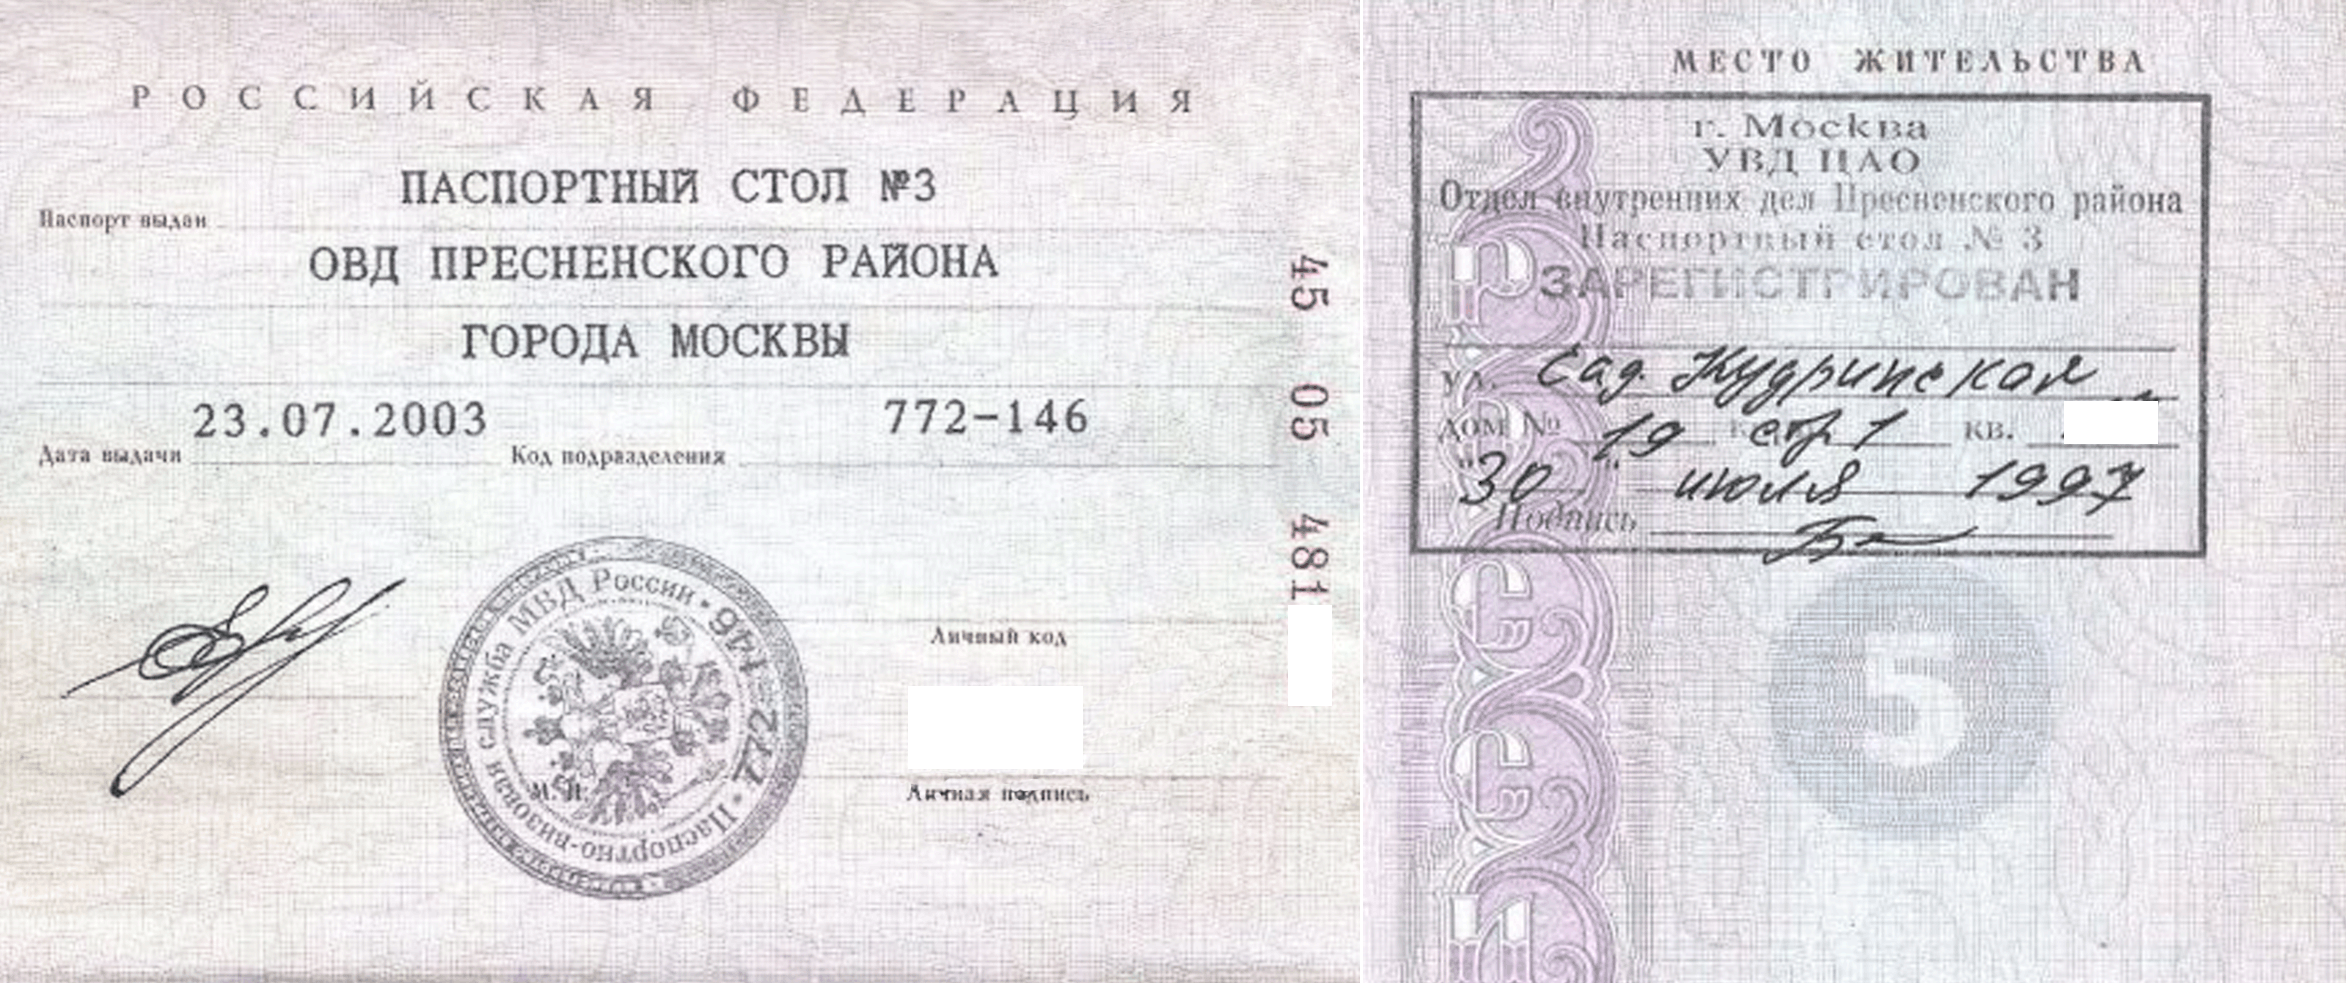 Март дата регистрации. Паспортные данные Москва с пропиской.